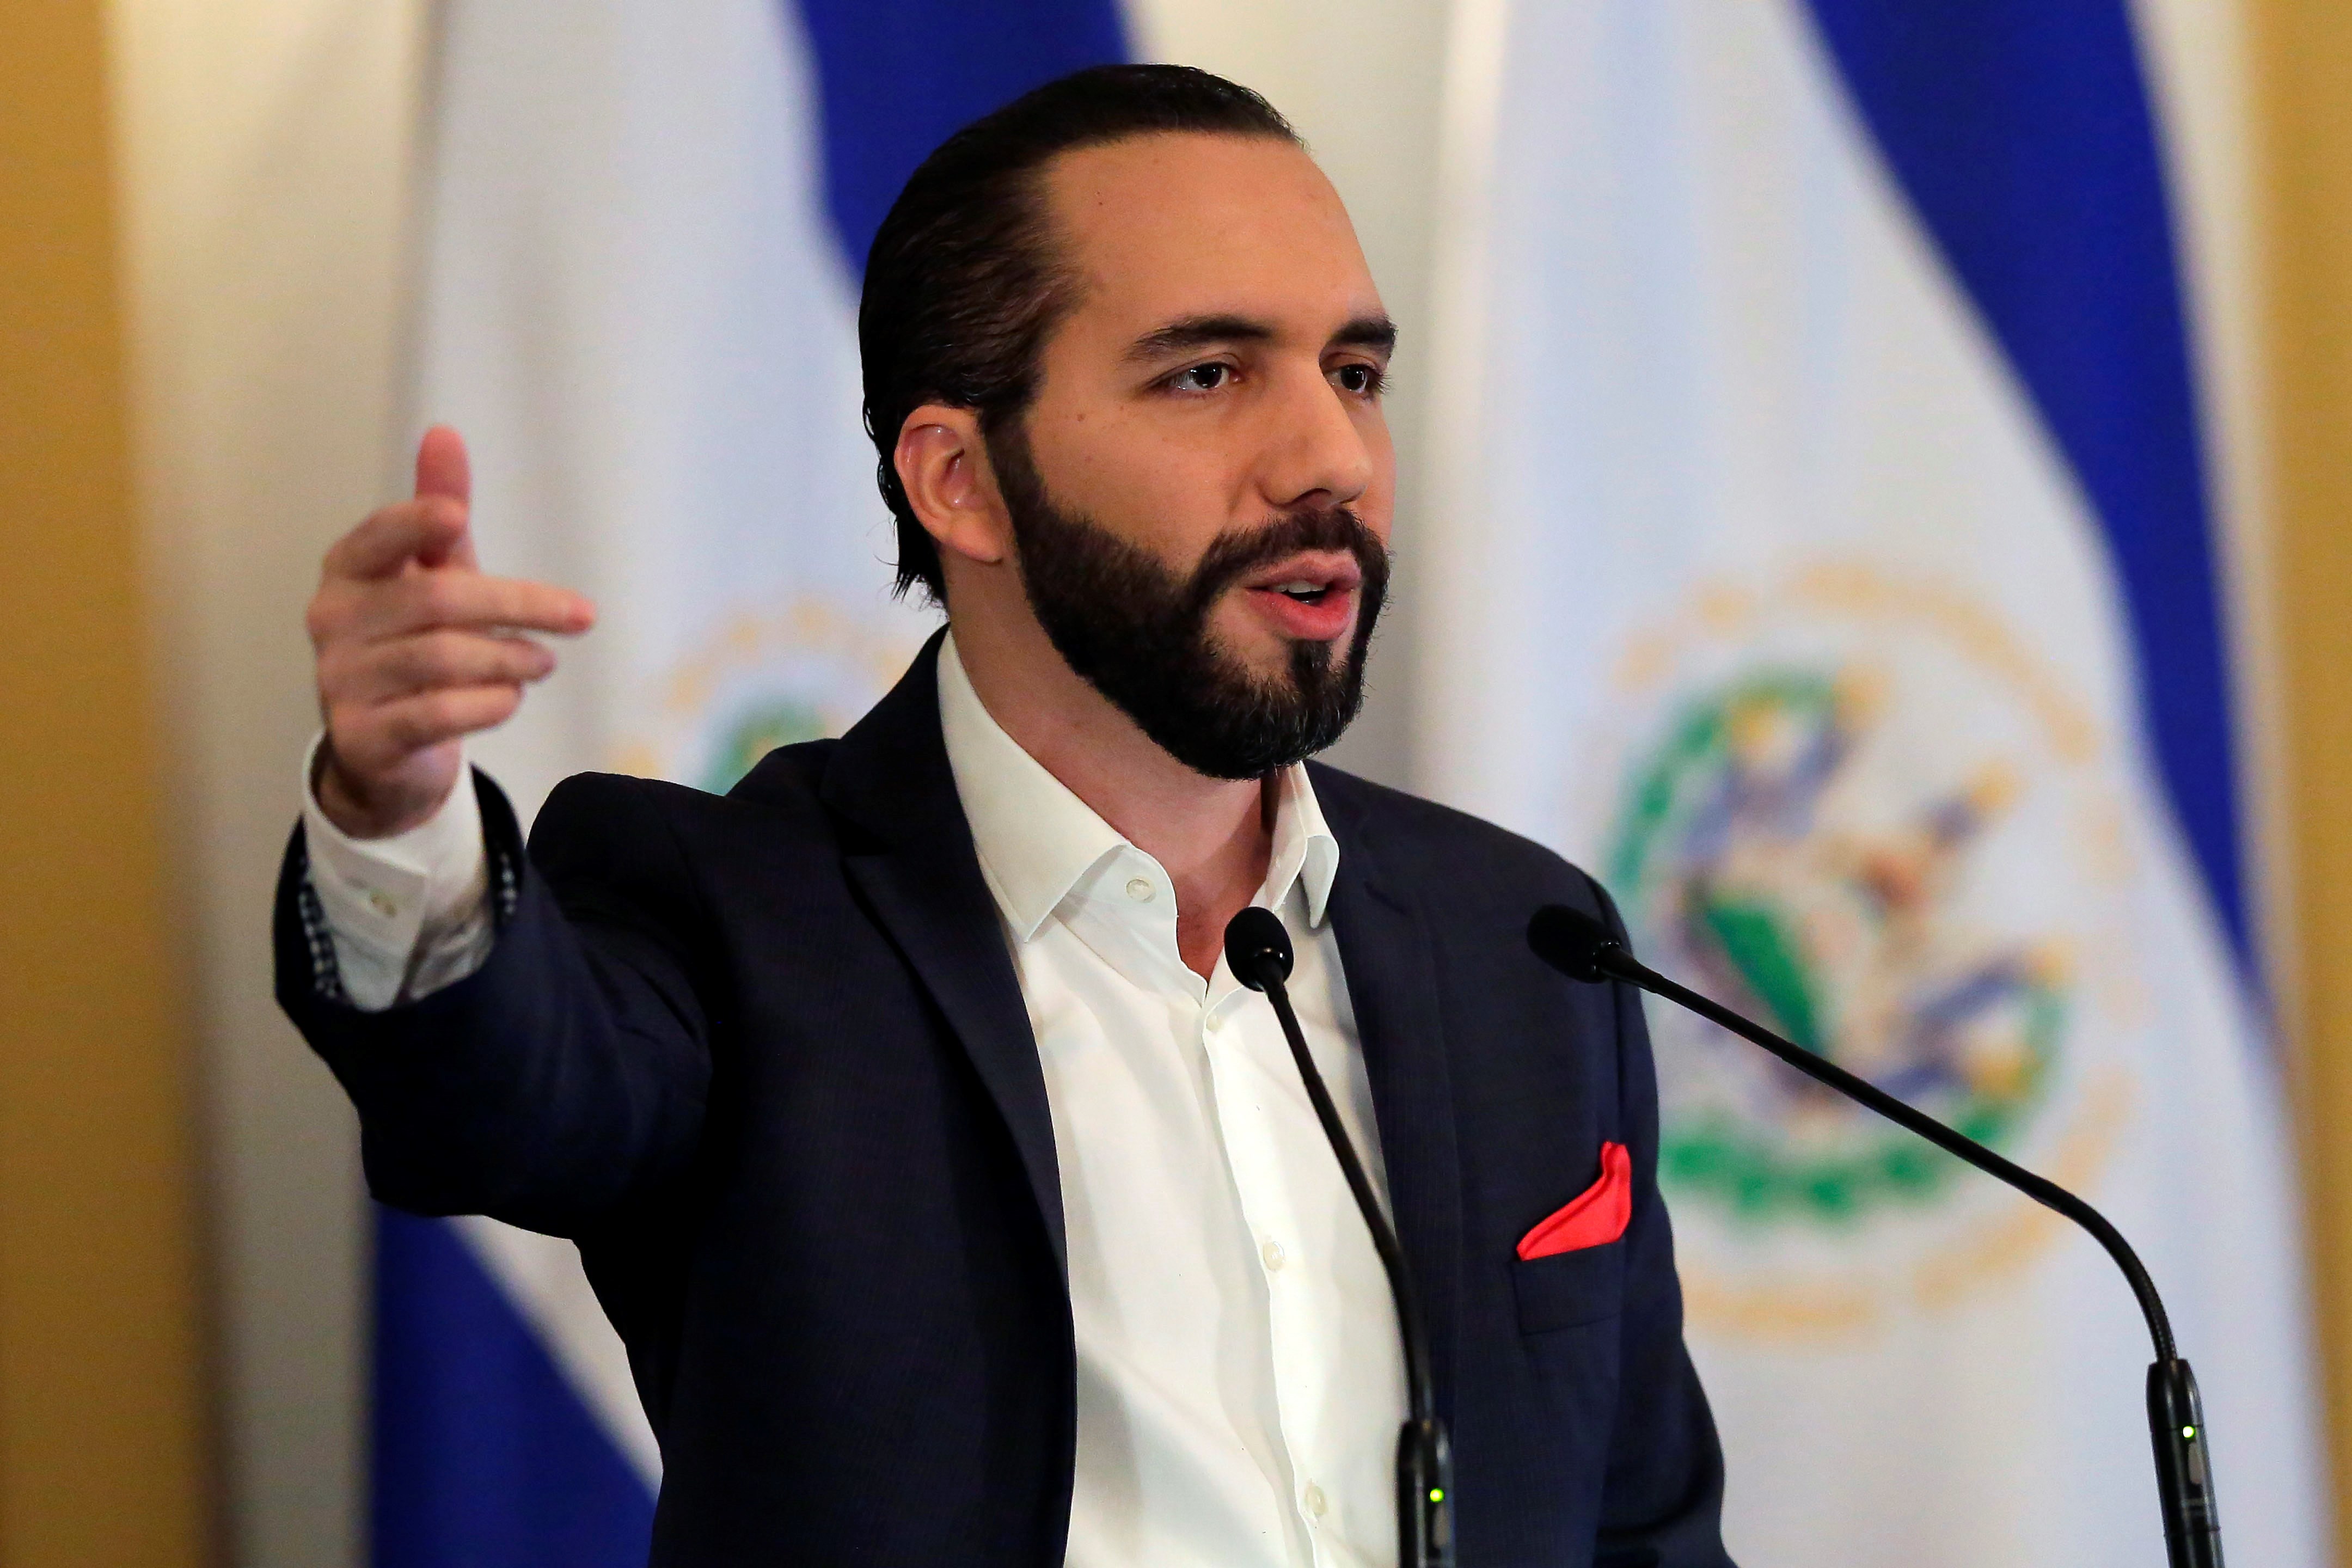 Reducción de victimización se mantuvo por tercer trimestre consecutivo en El Salvador